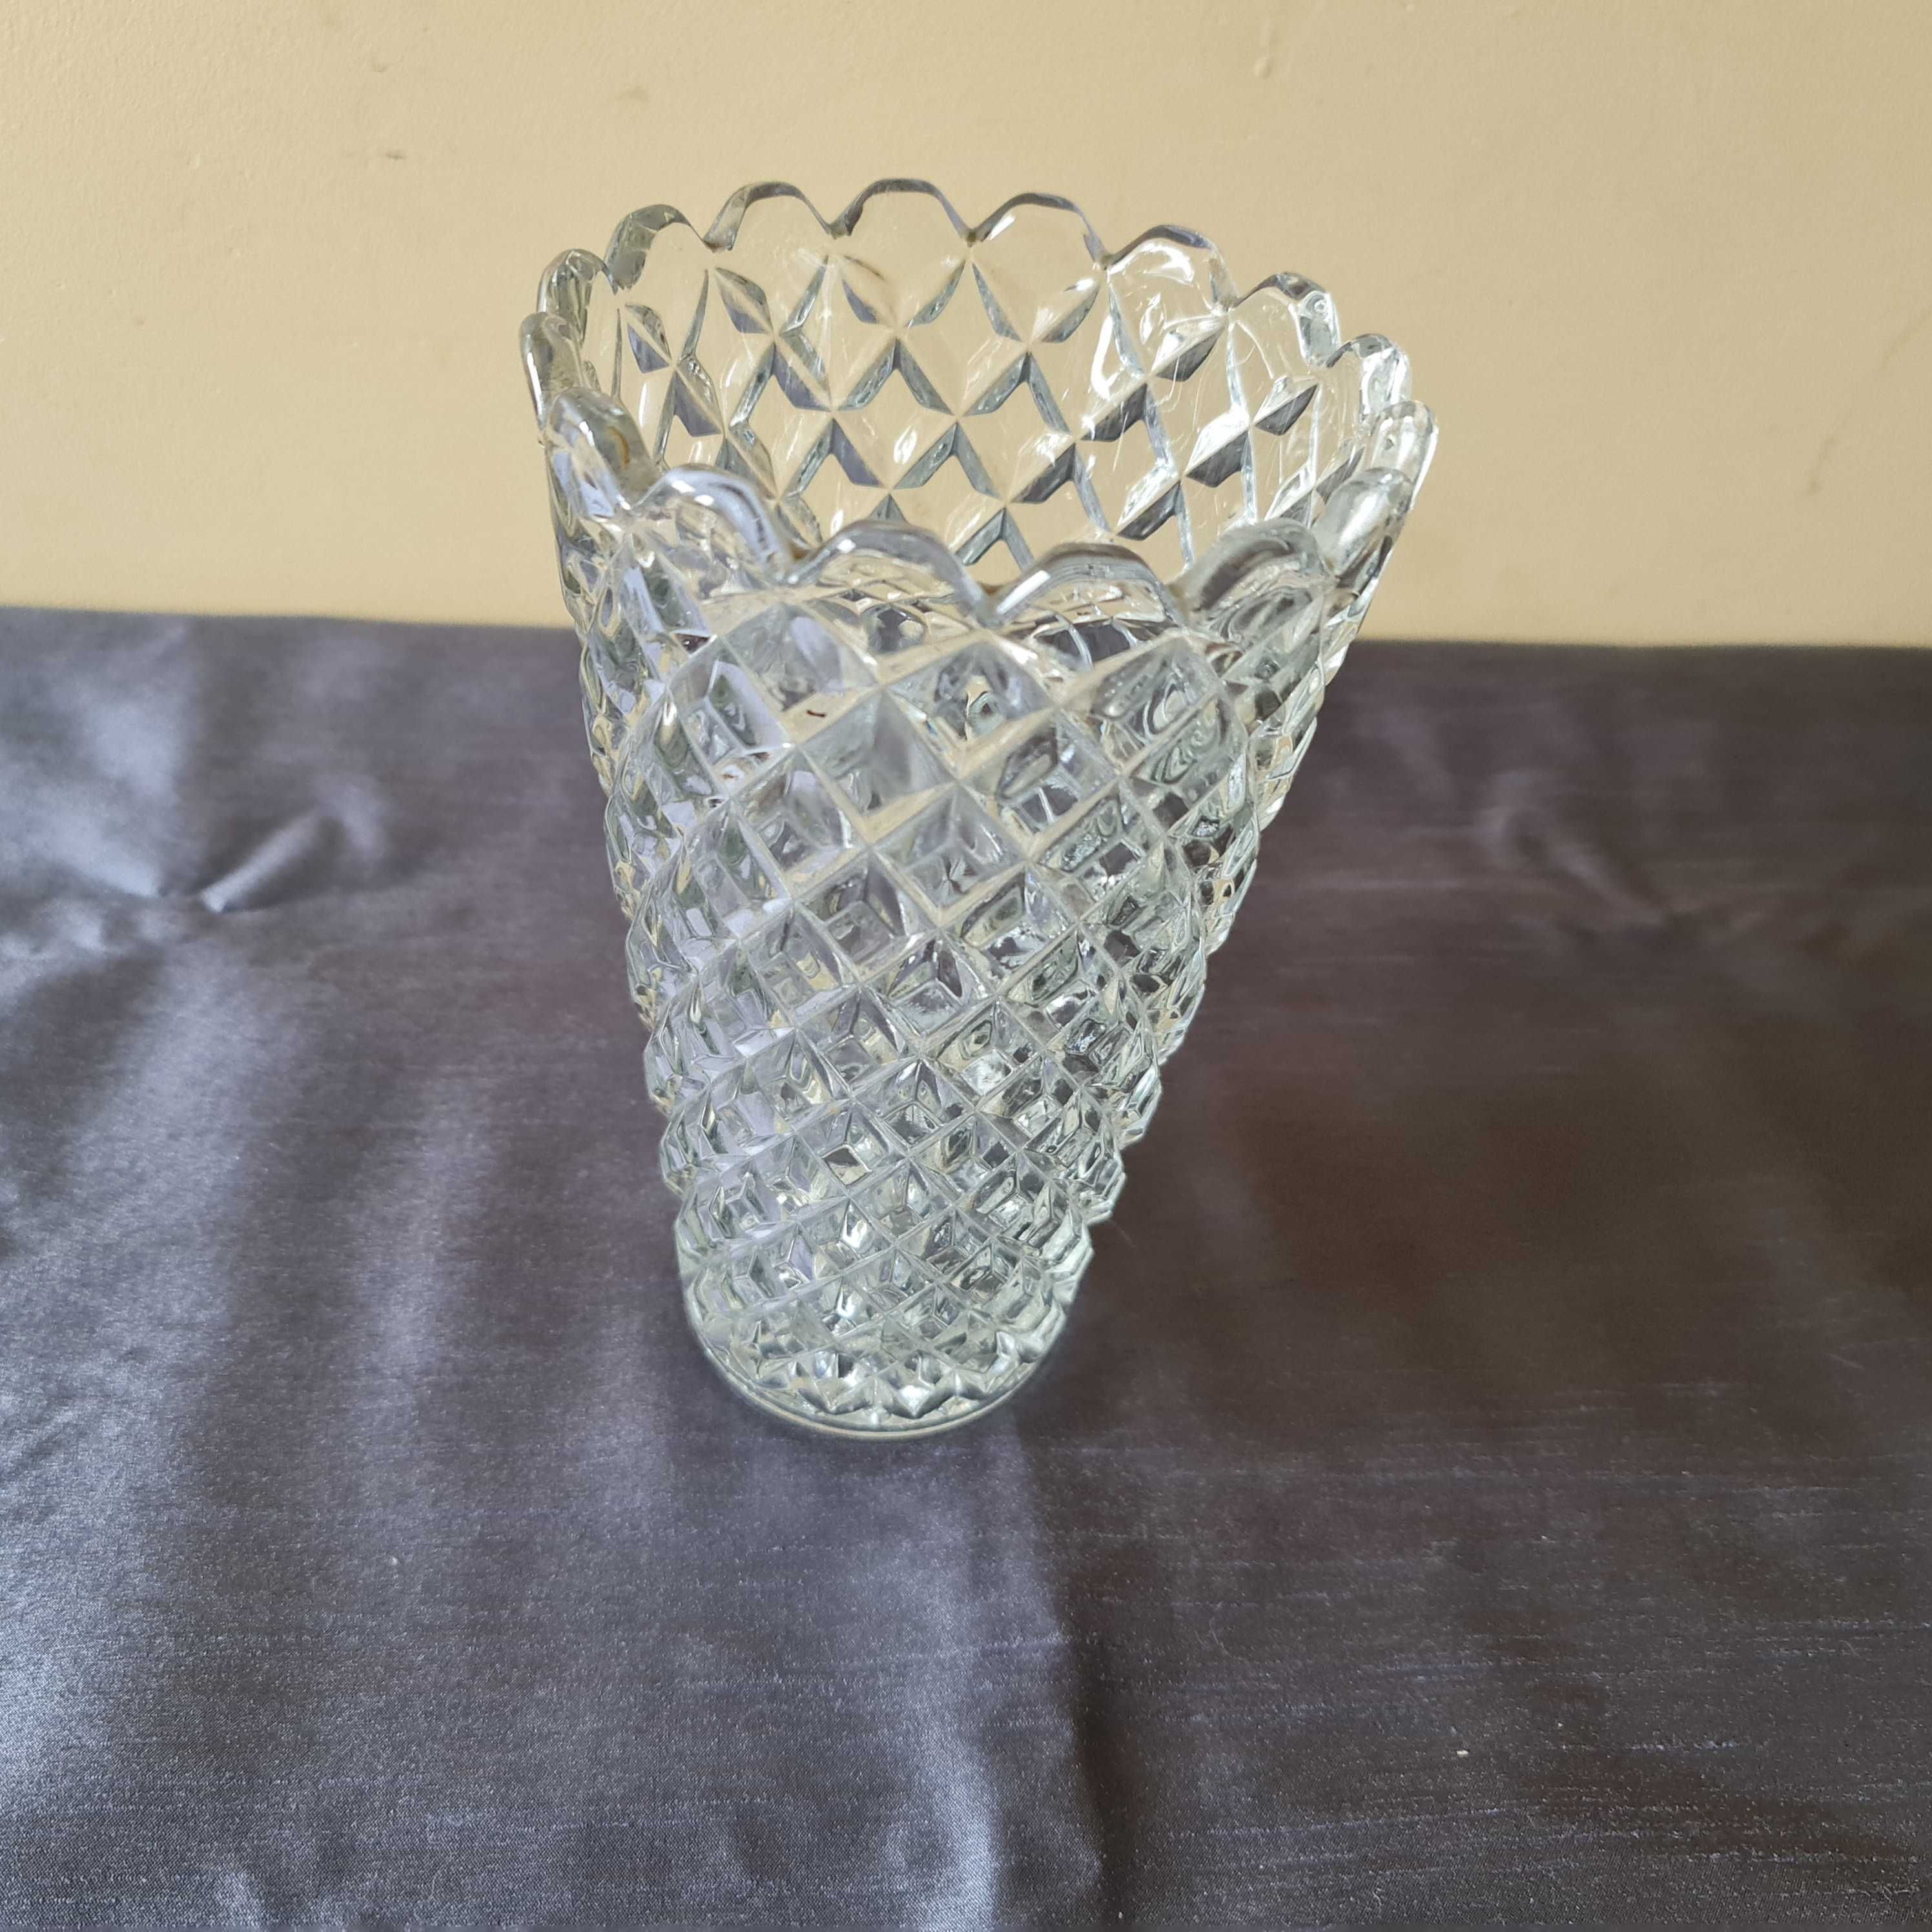 Szkalny wazon z grubego szkła - okres PRL-u